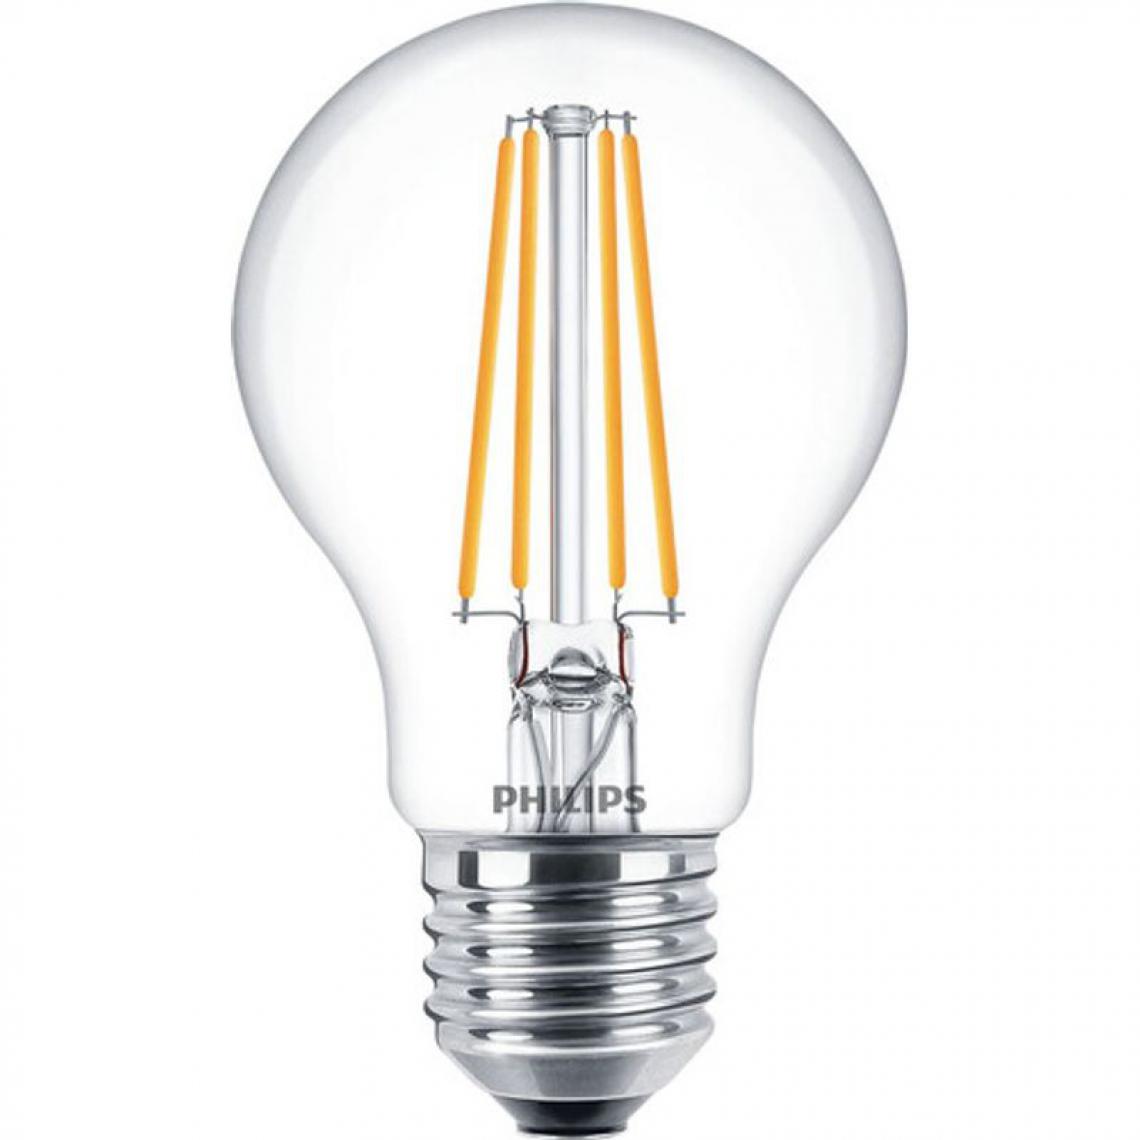 Philips - Lot de 3 ampoules LED filament PHILIPS standard E27 60W - Ampoules LED